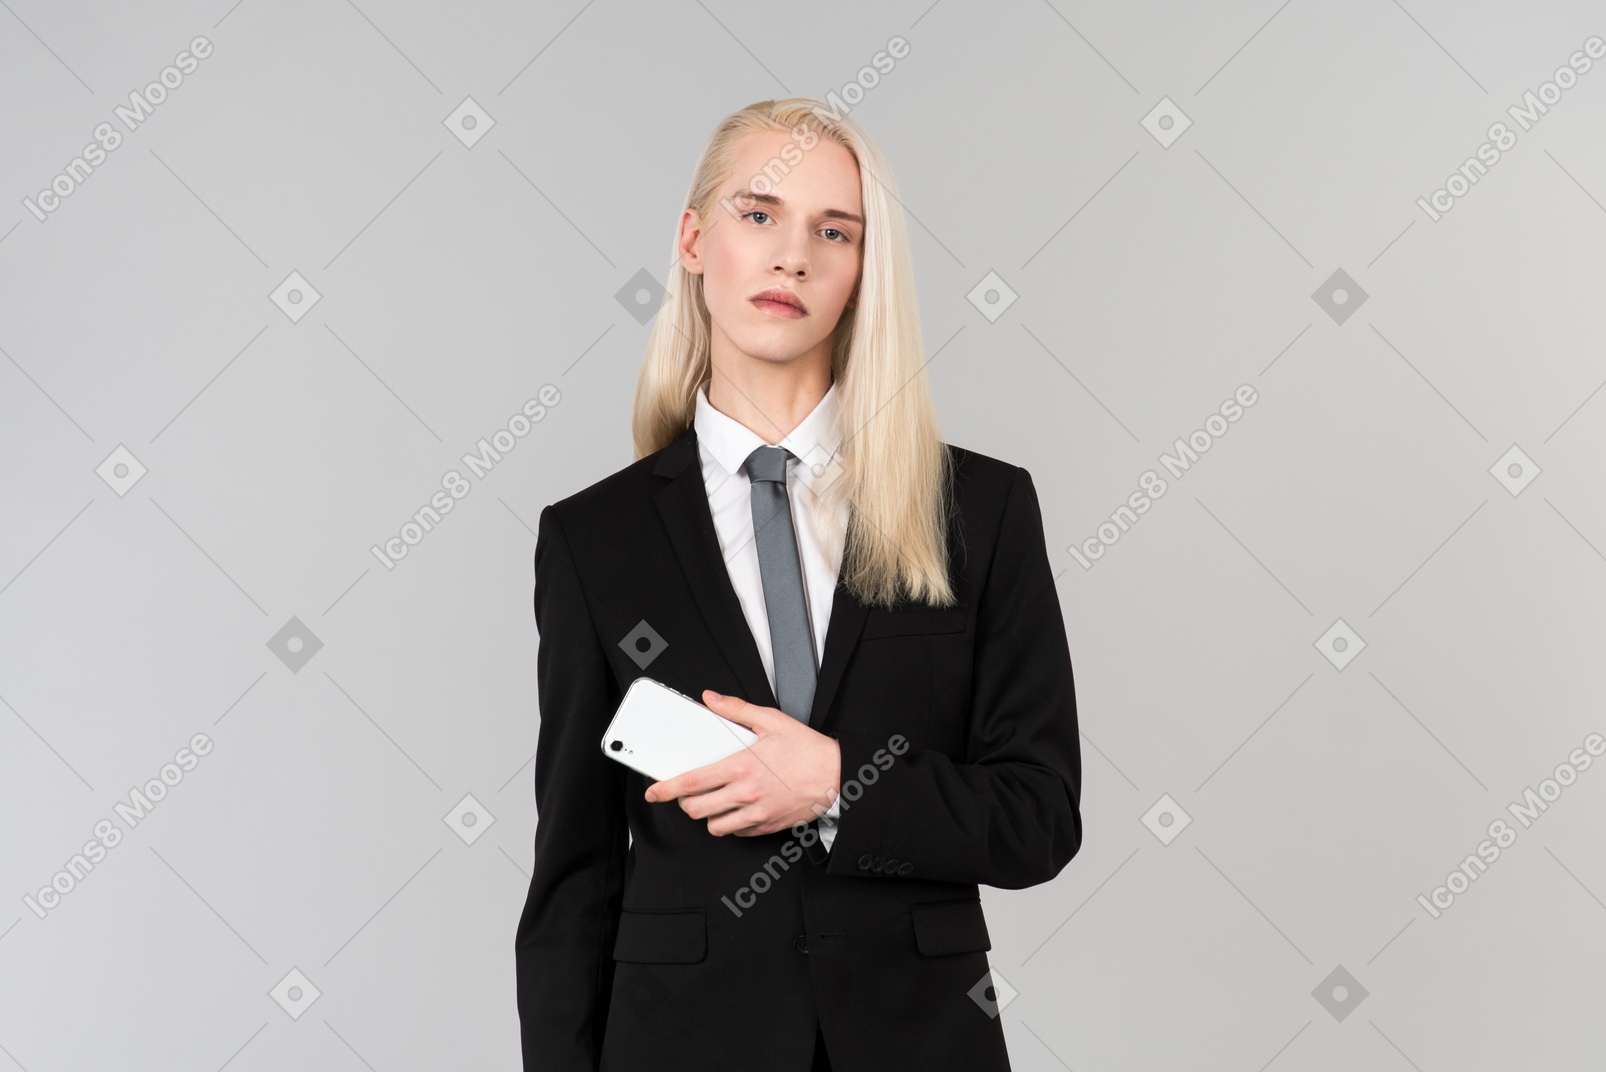 Jeune bel homme aux longs cheveux blonds, vêtu d'un costume noir et d'une cravate, debout contre le fond gris uni